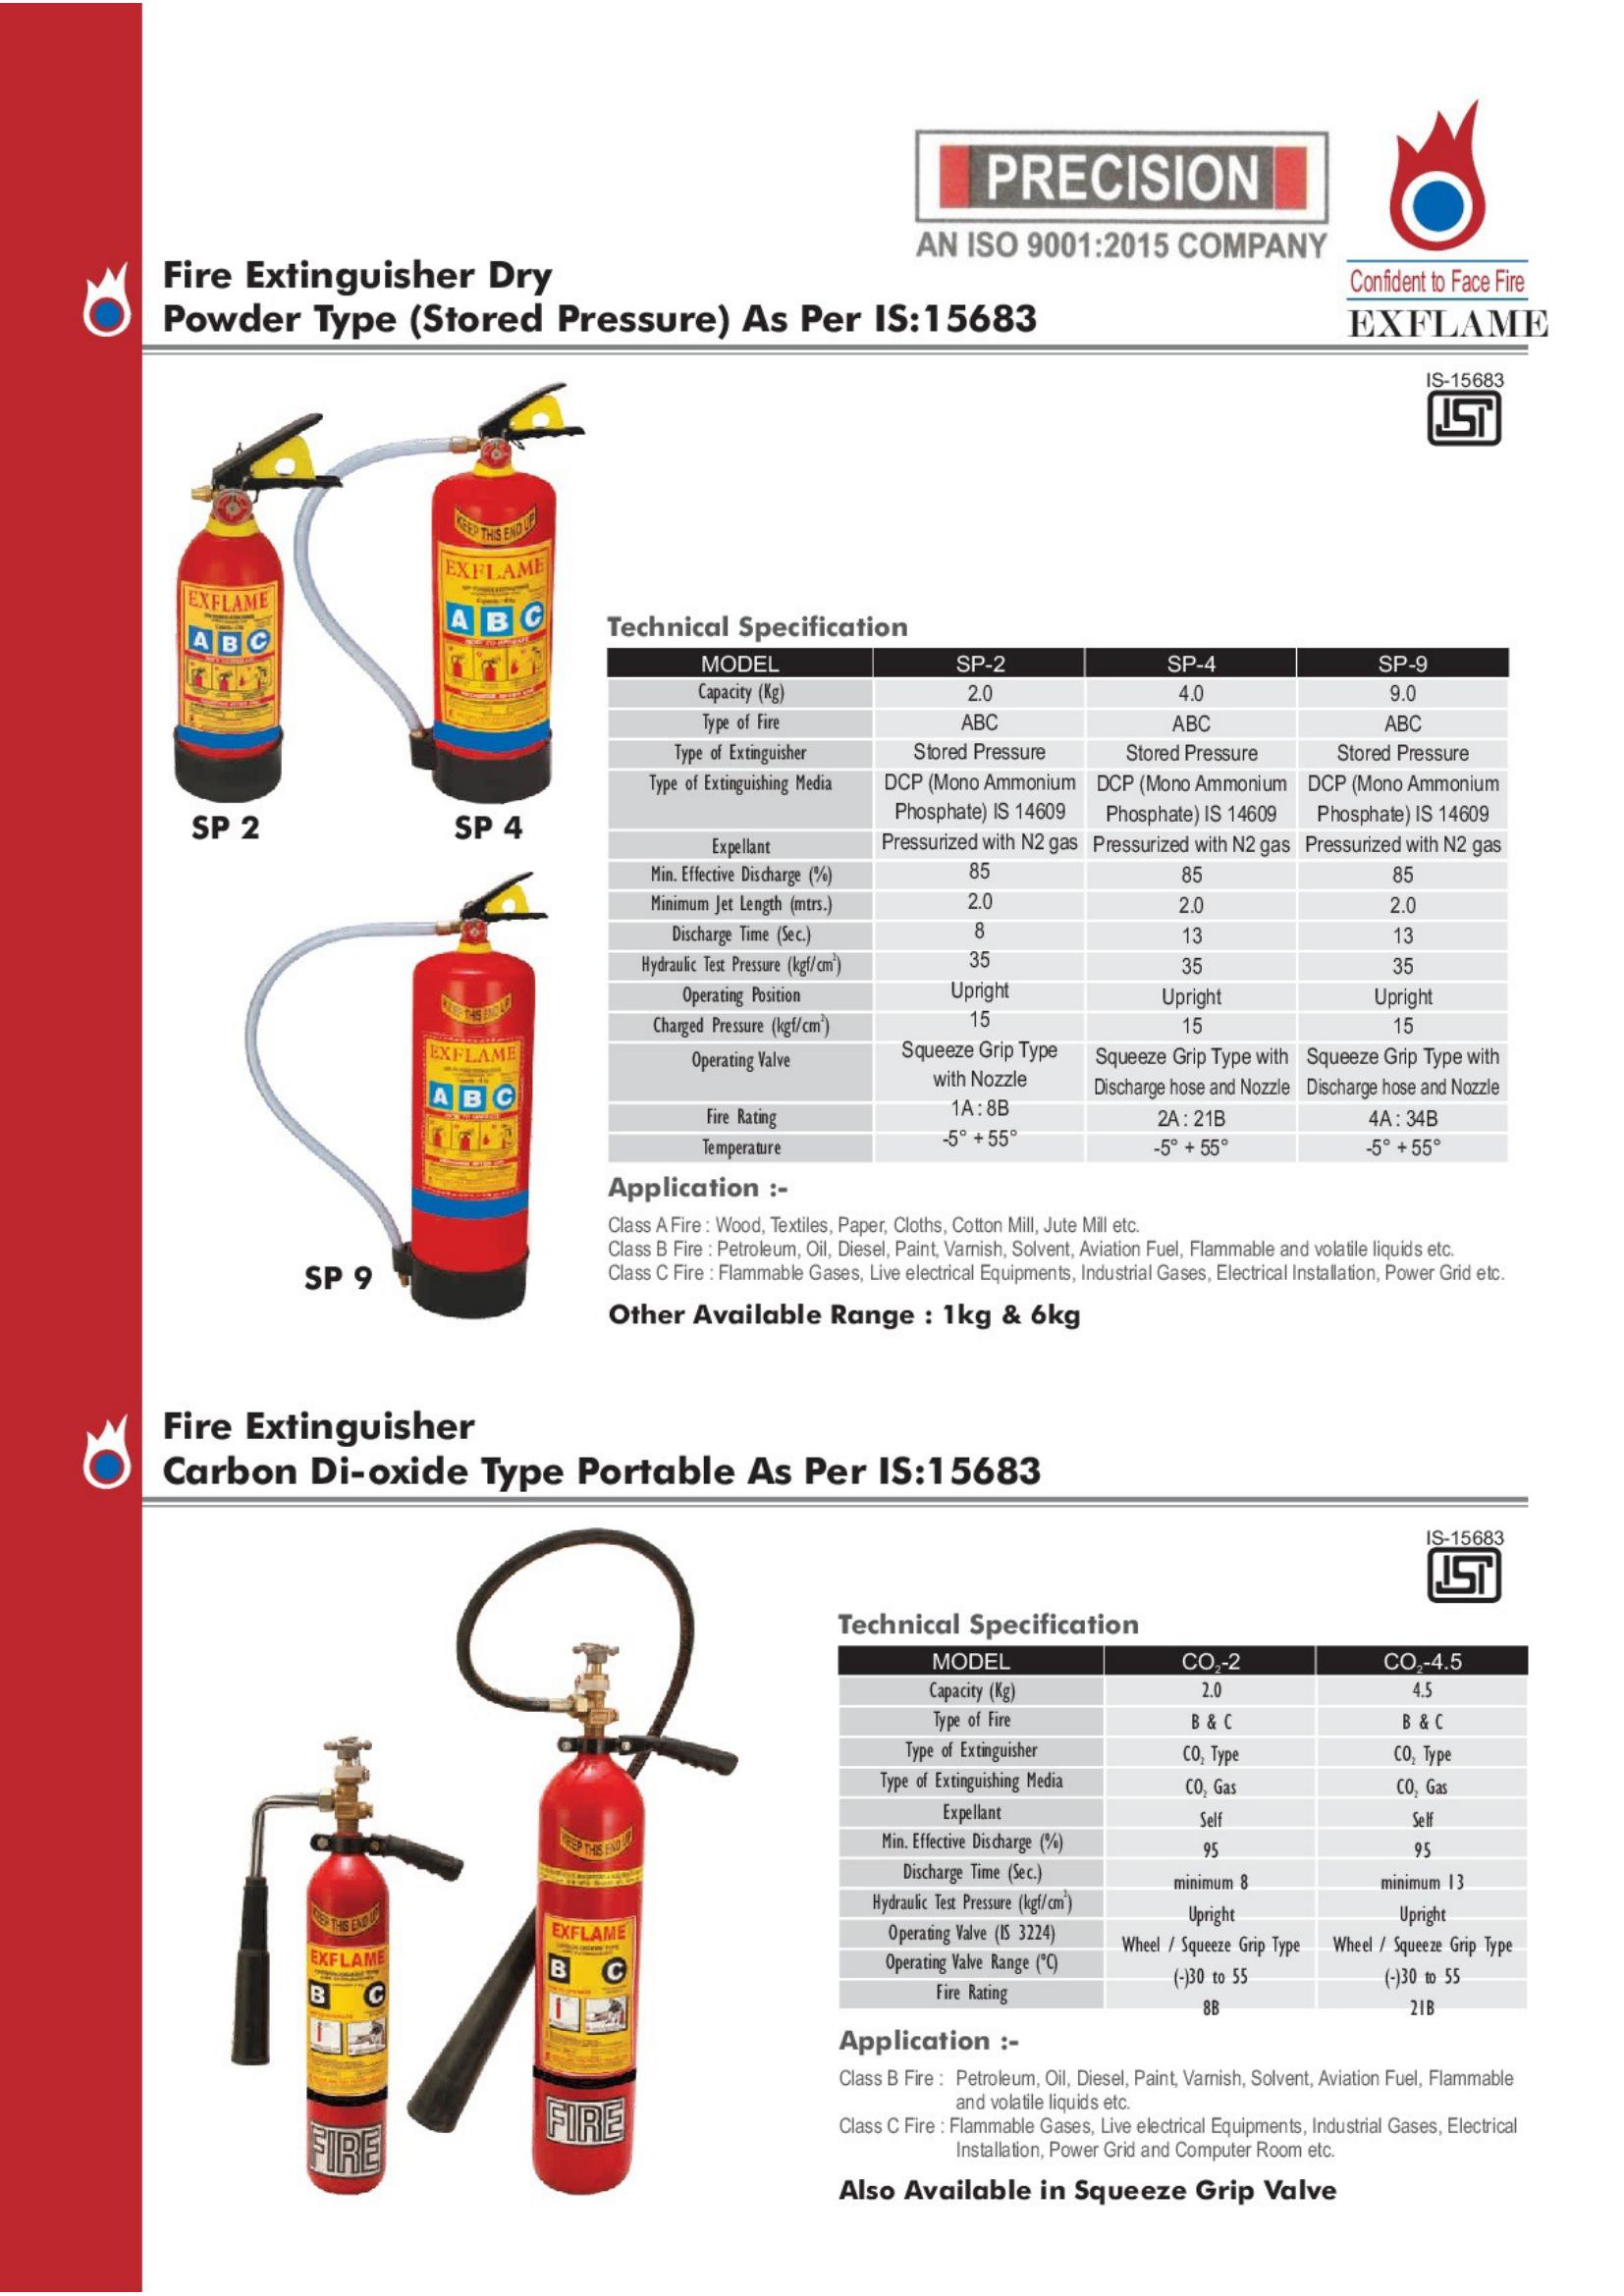 Exflame Precision Catlogue.pdf_9_0